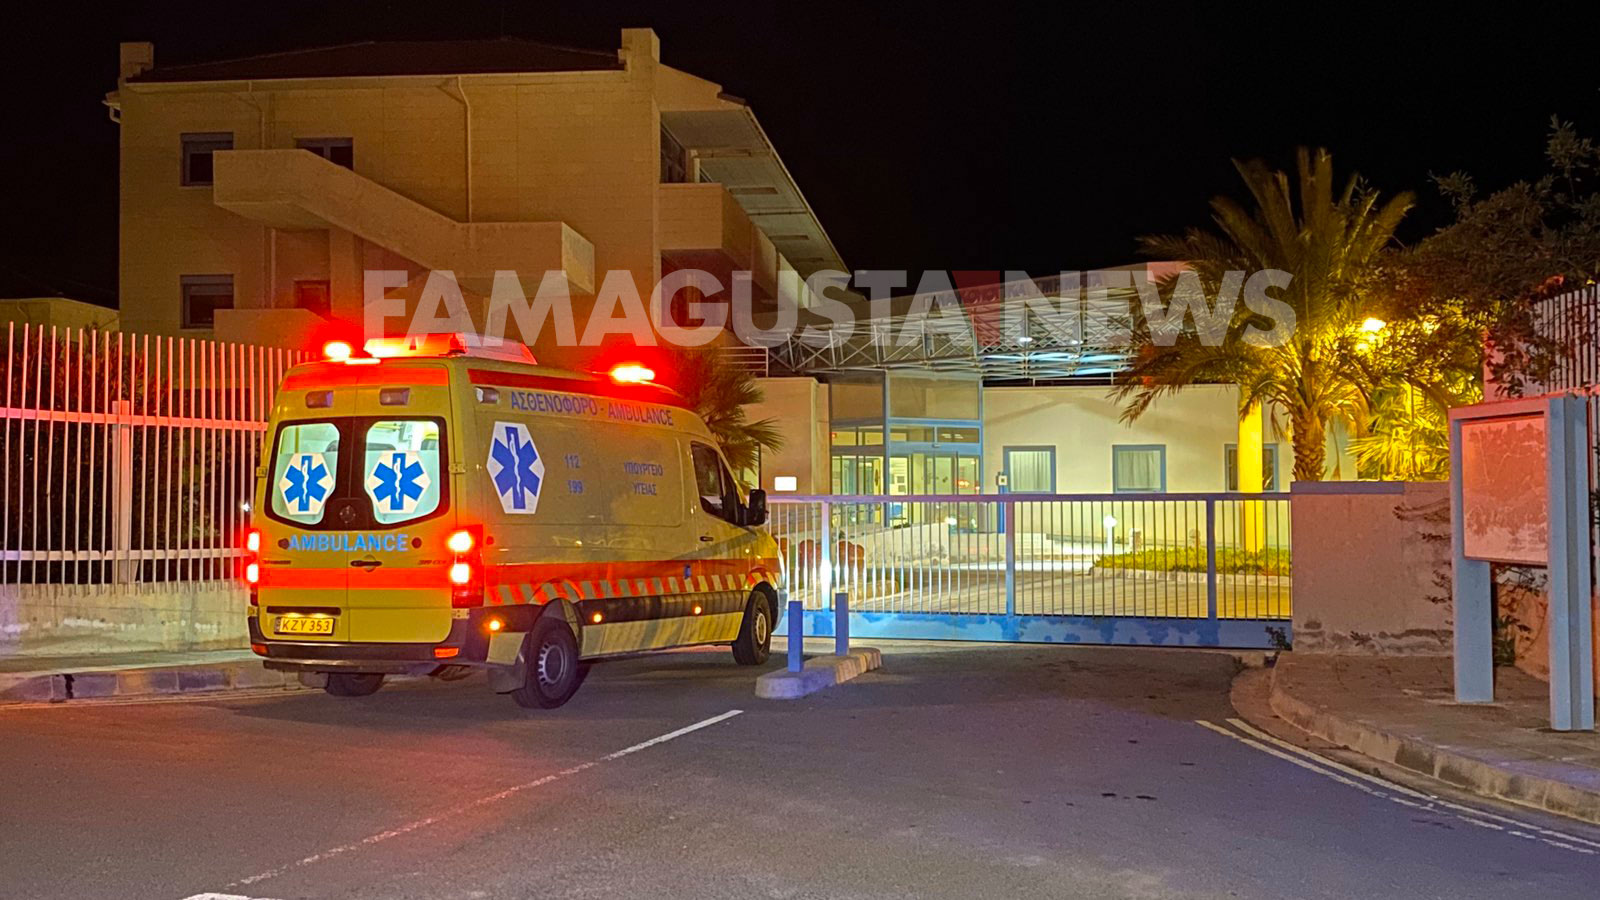 viber image 2020 03 11 19 58 05 Famagusta General Hospital